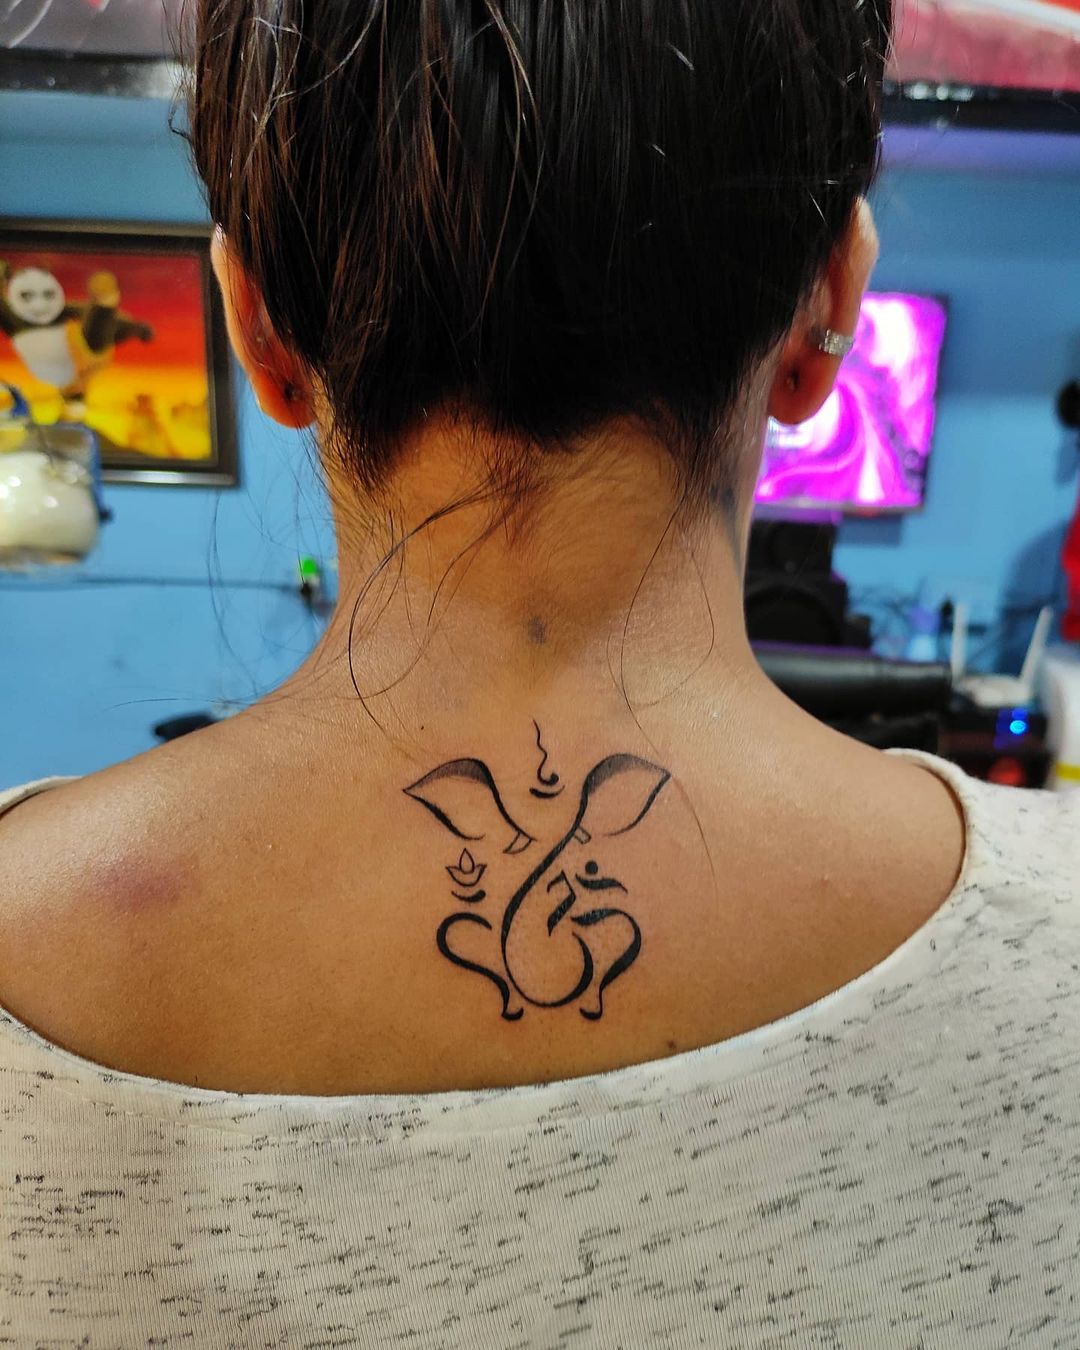 Tattoo uploaded by Gems Tattoo Studio  Lord shiva 3d tattoo Om namah shivay  with trishul and om  Tattoodo